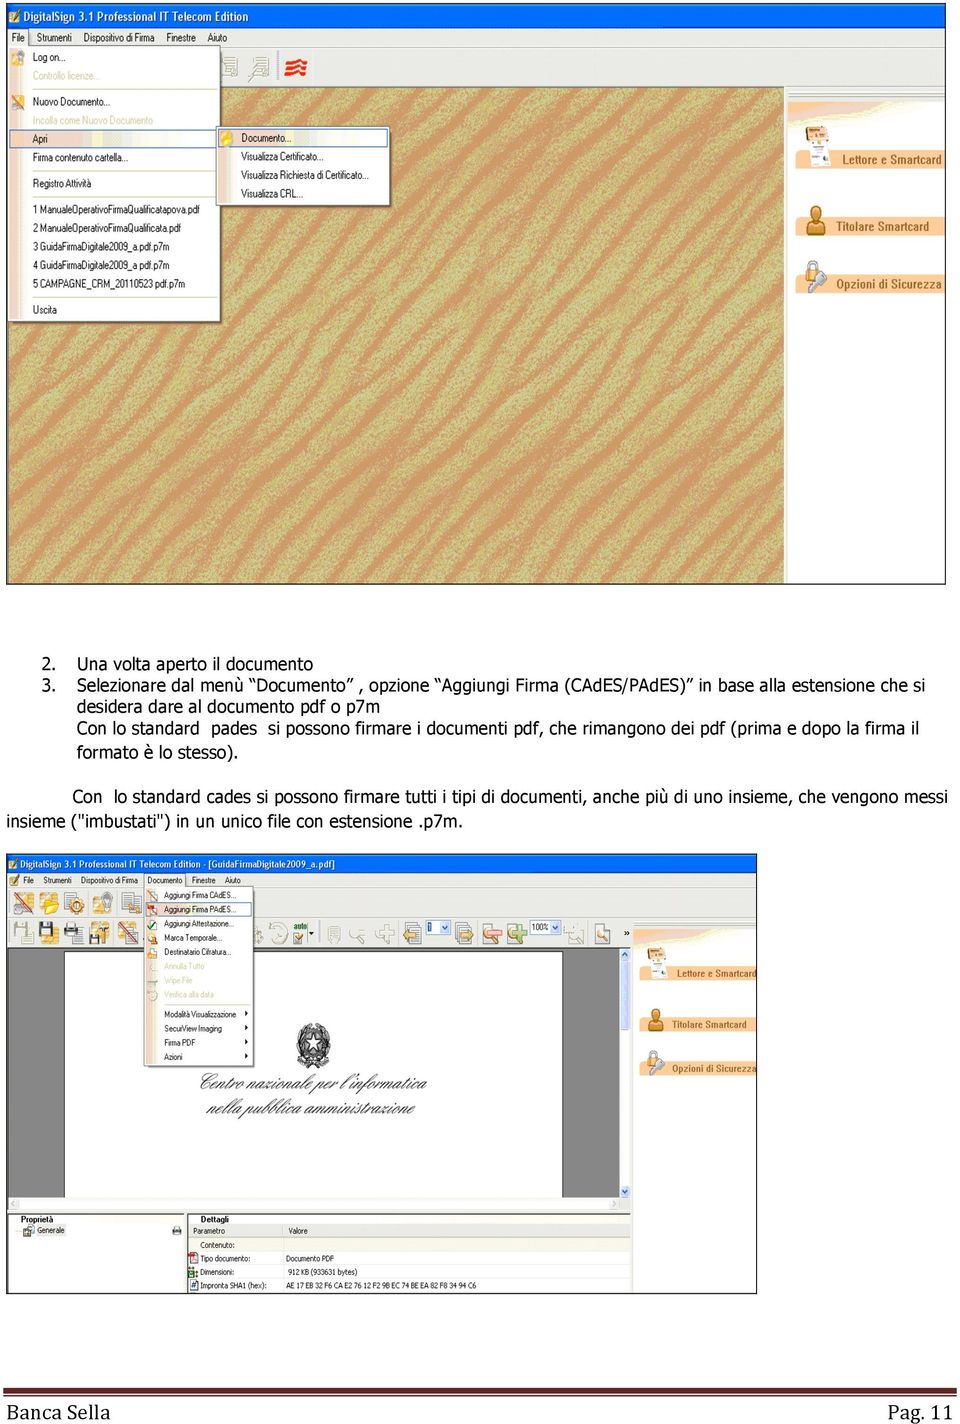 documento pdf o p7m Con lo standard pades si possono firmare i documenti pdf, che rimangono dei pdf (prima e dopo la